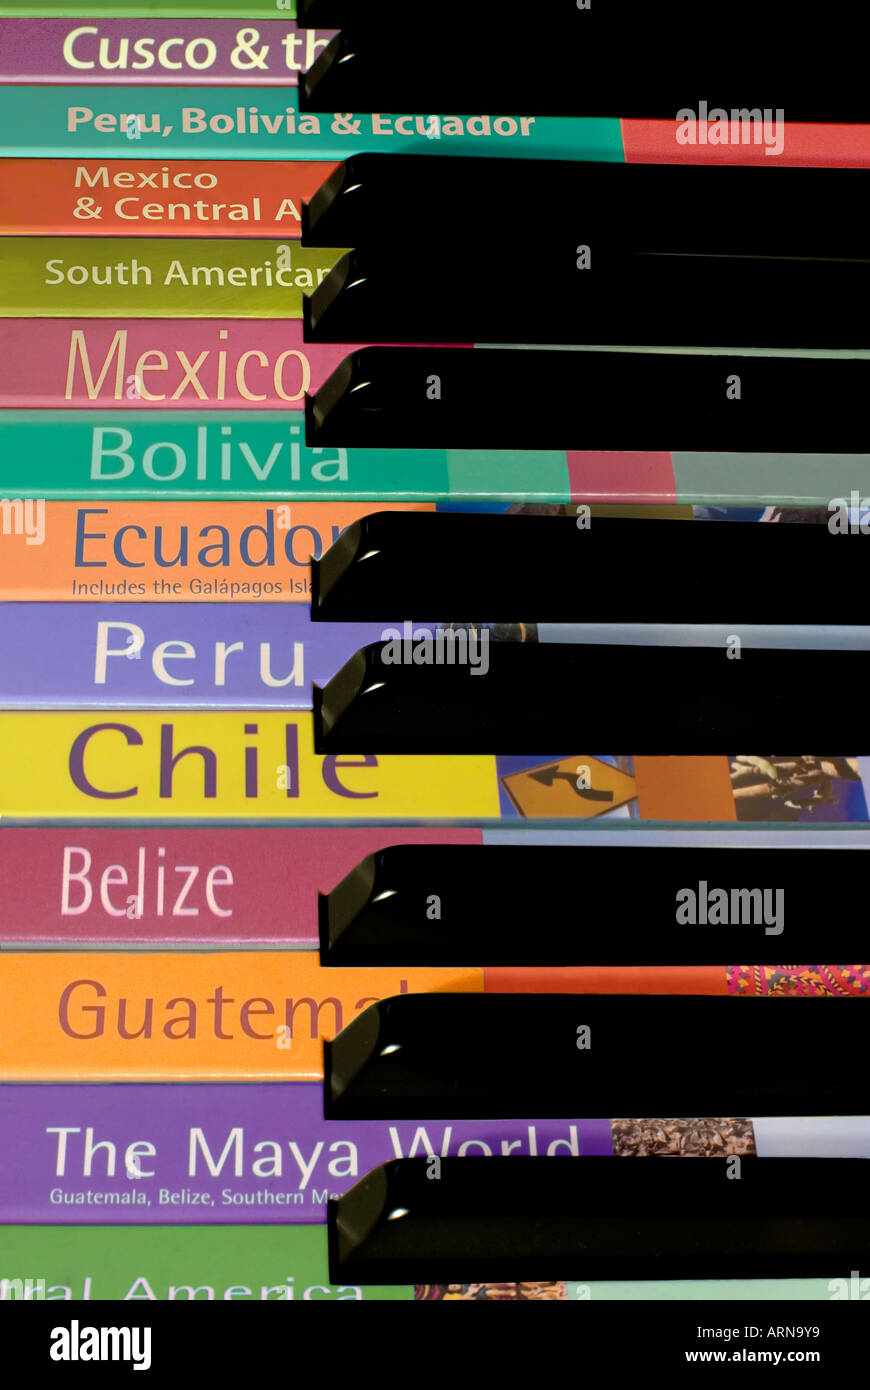 Sélection de guides de voyage pour l'Amérique latine en superposition sur les touches d'un piano Banque D'Images